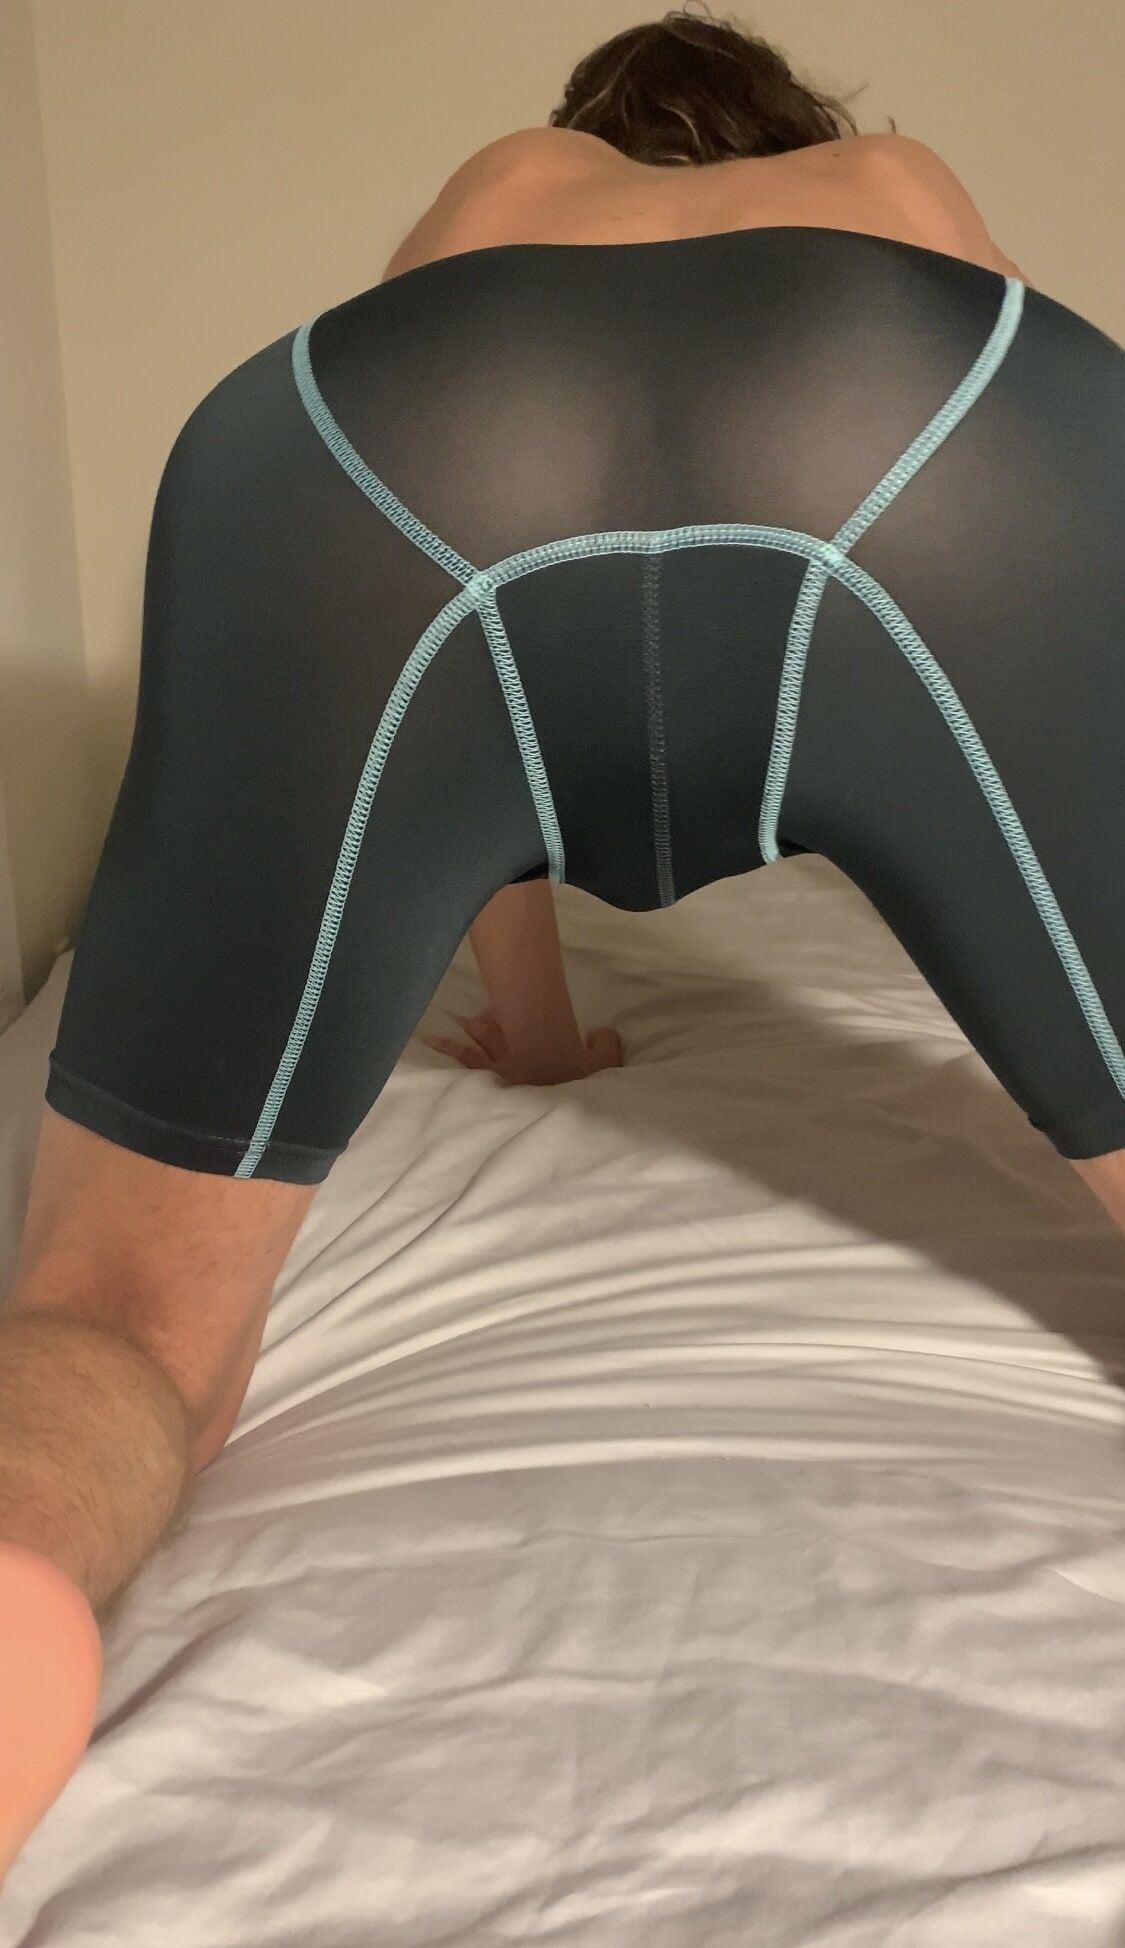 Sexy boy in spandex underwear strips